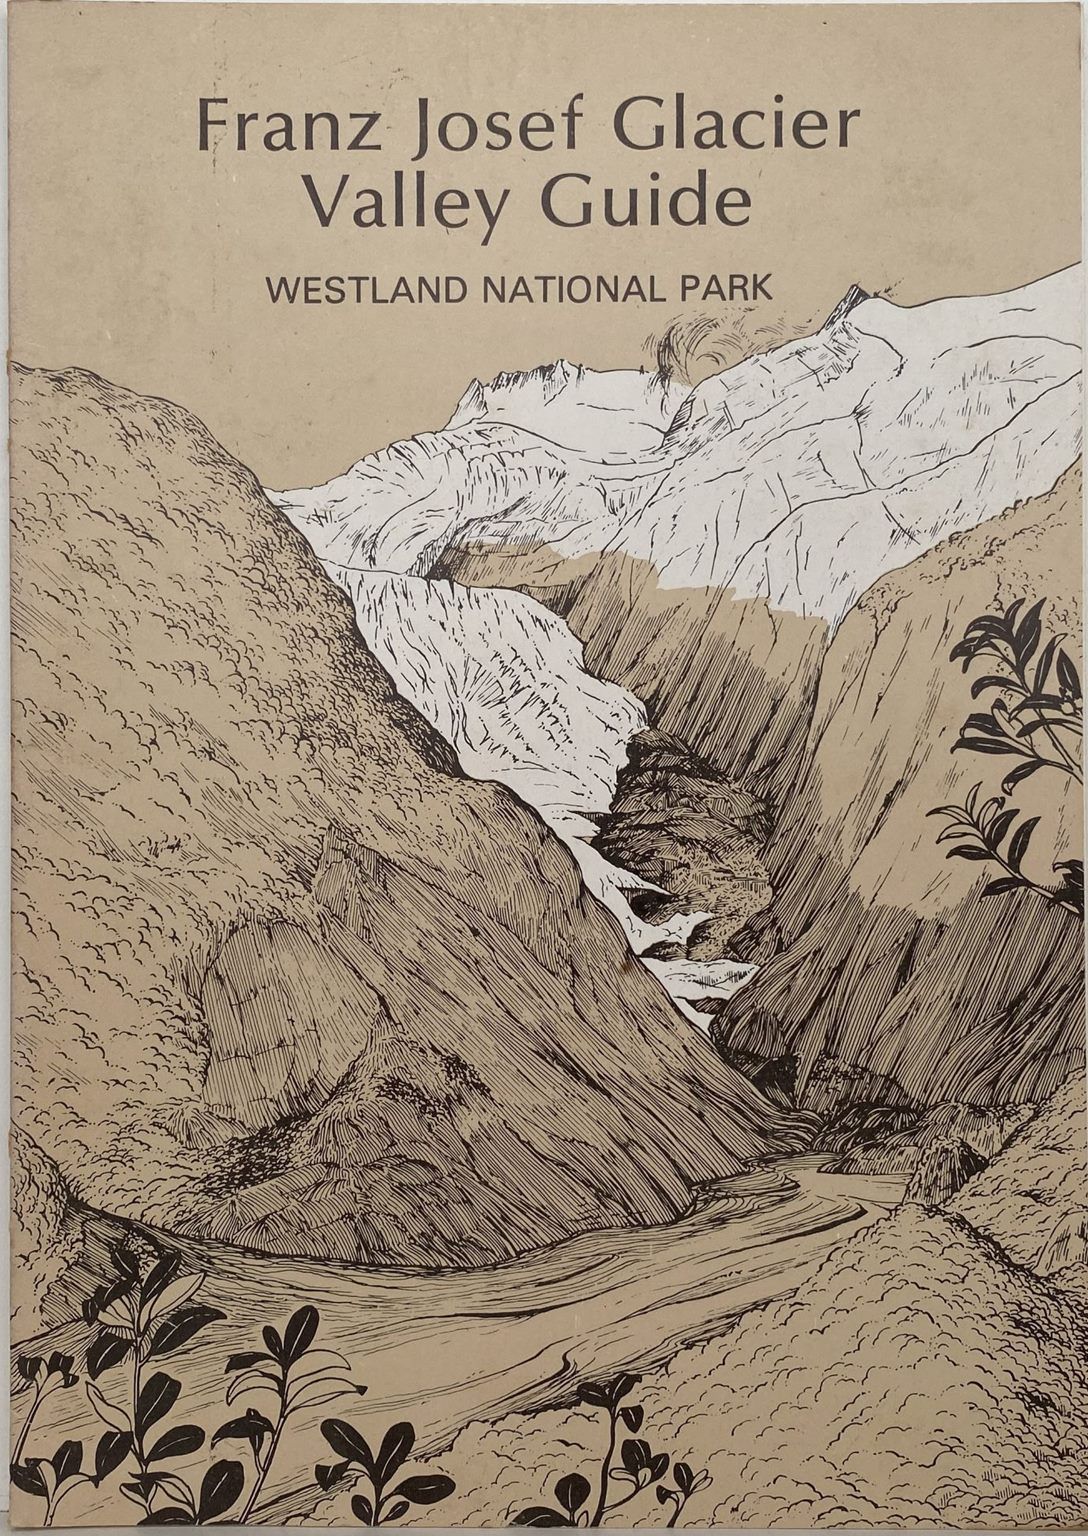 FRANZ JOSEF GLACIER: Valley Guide - Westland National Park